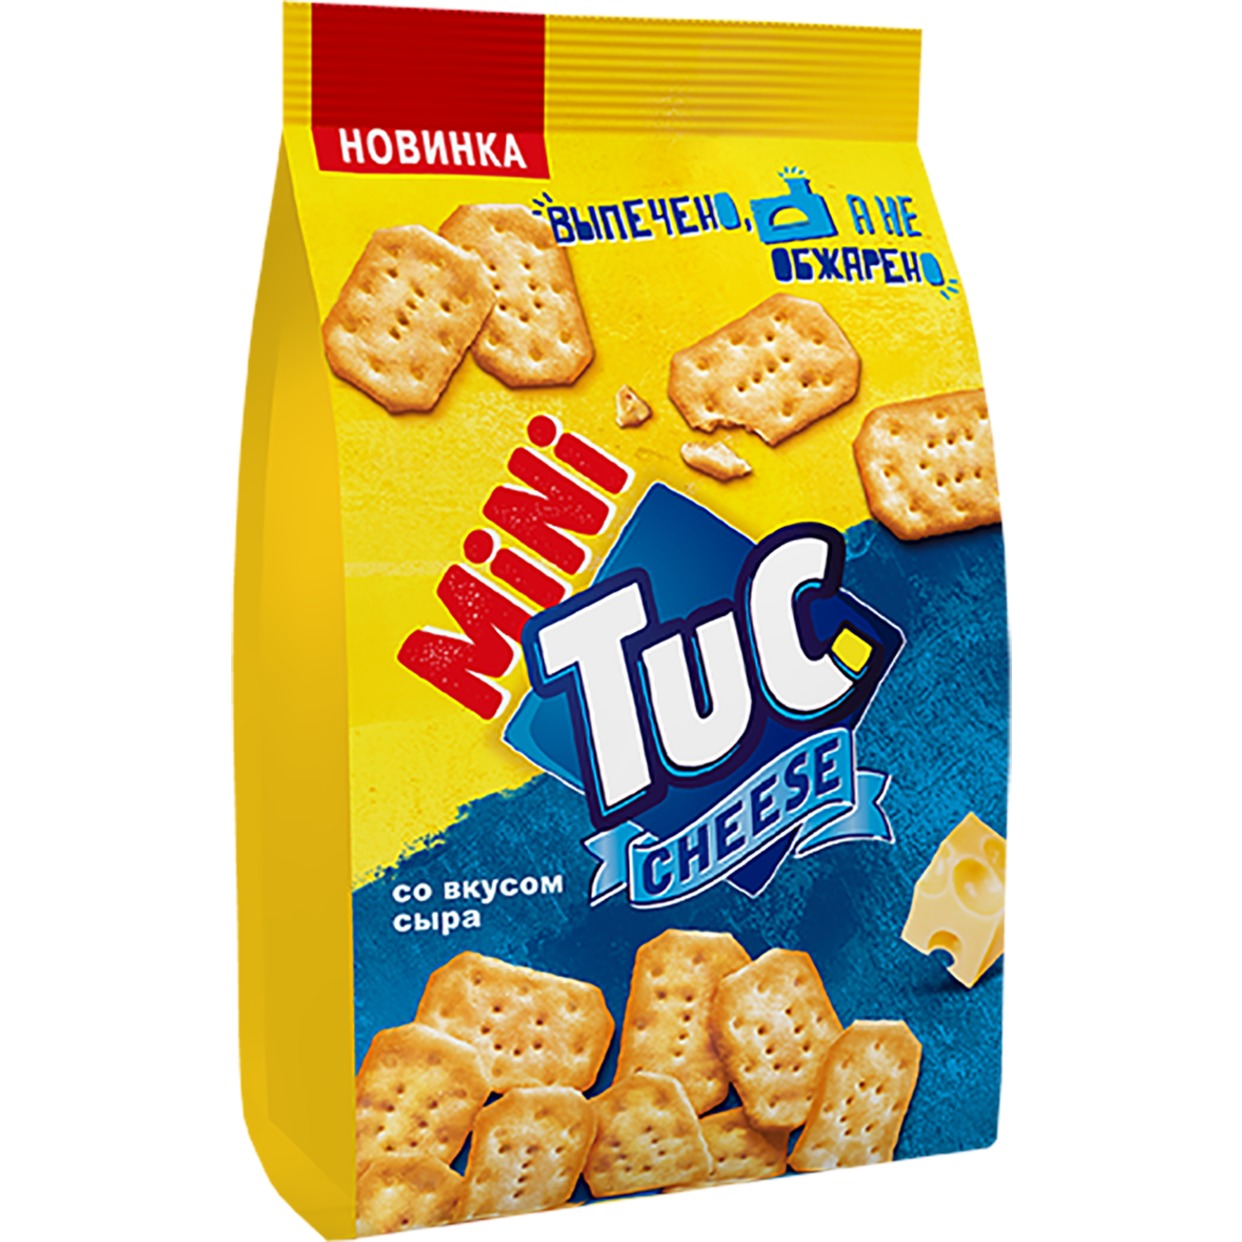 Крекер «TUC mini» со вкусом сыра 100г по акции в Пятерочке